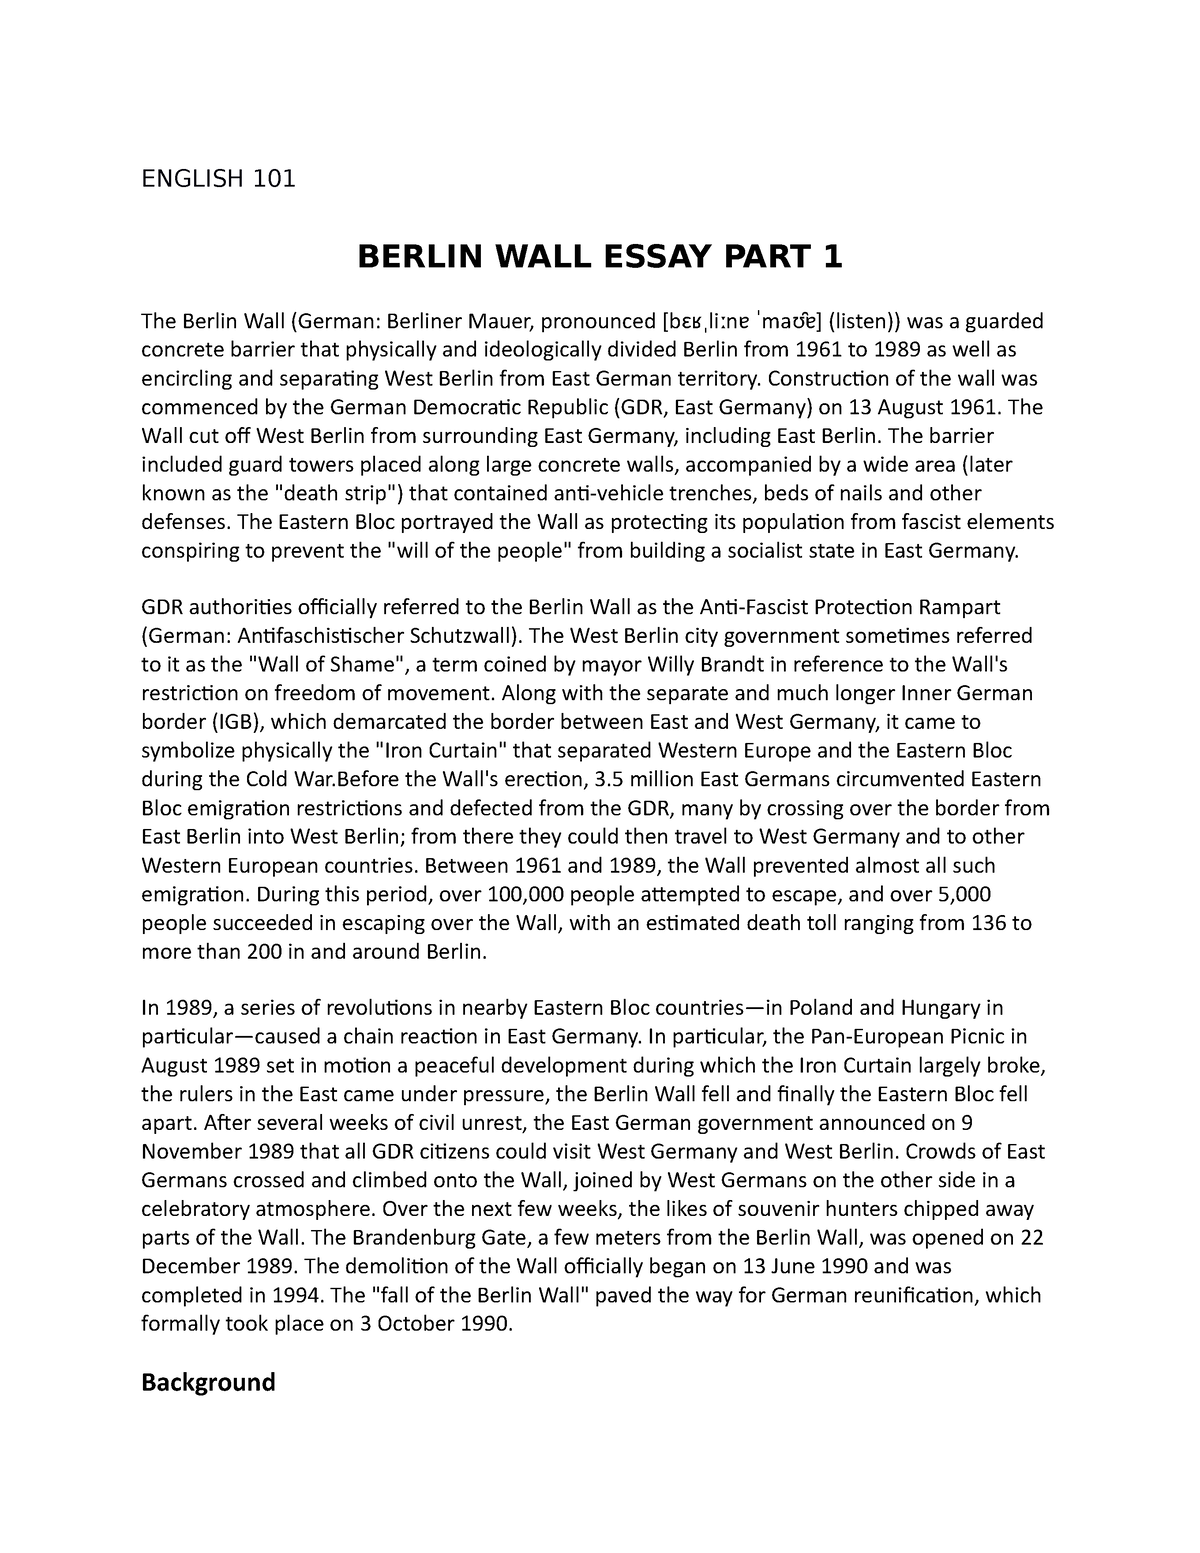 berlin wall essay title